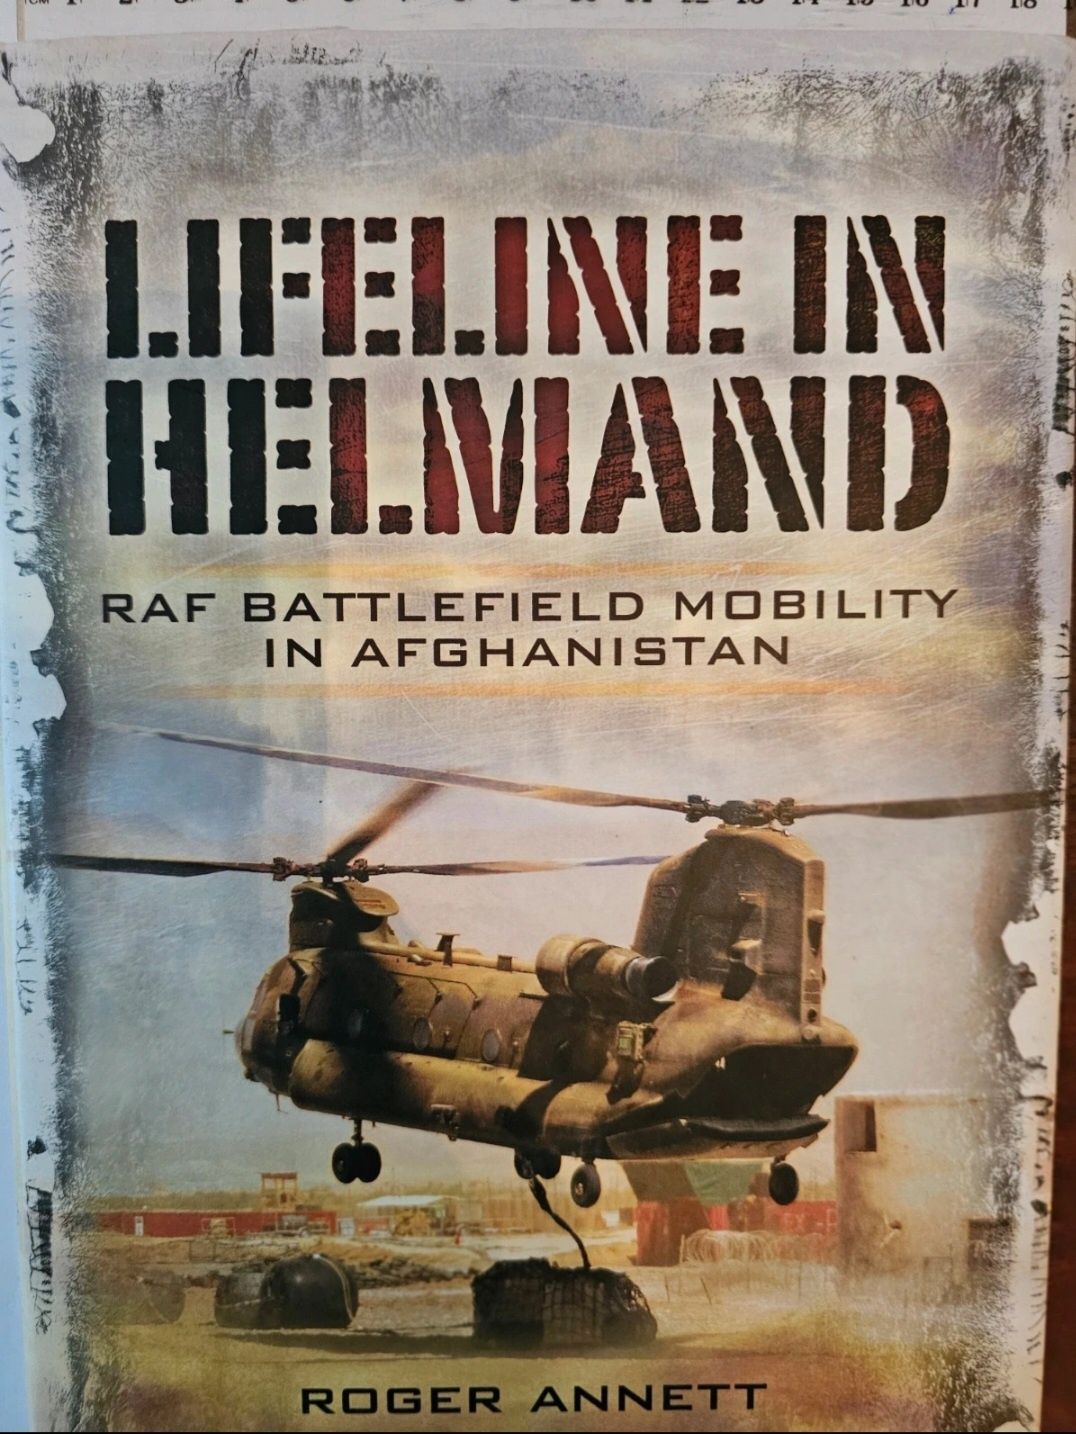 Lifeline in Helmand - carte operațiuni militare